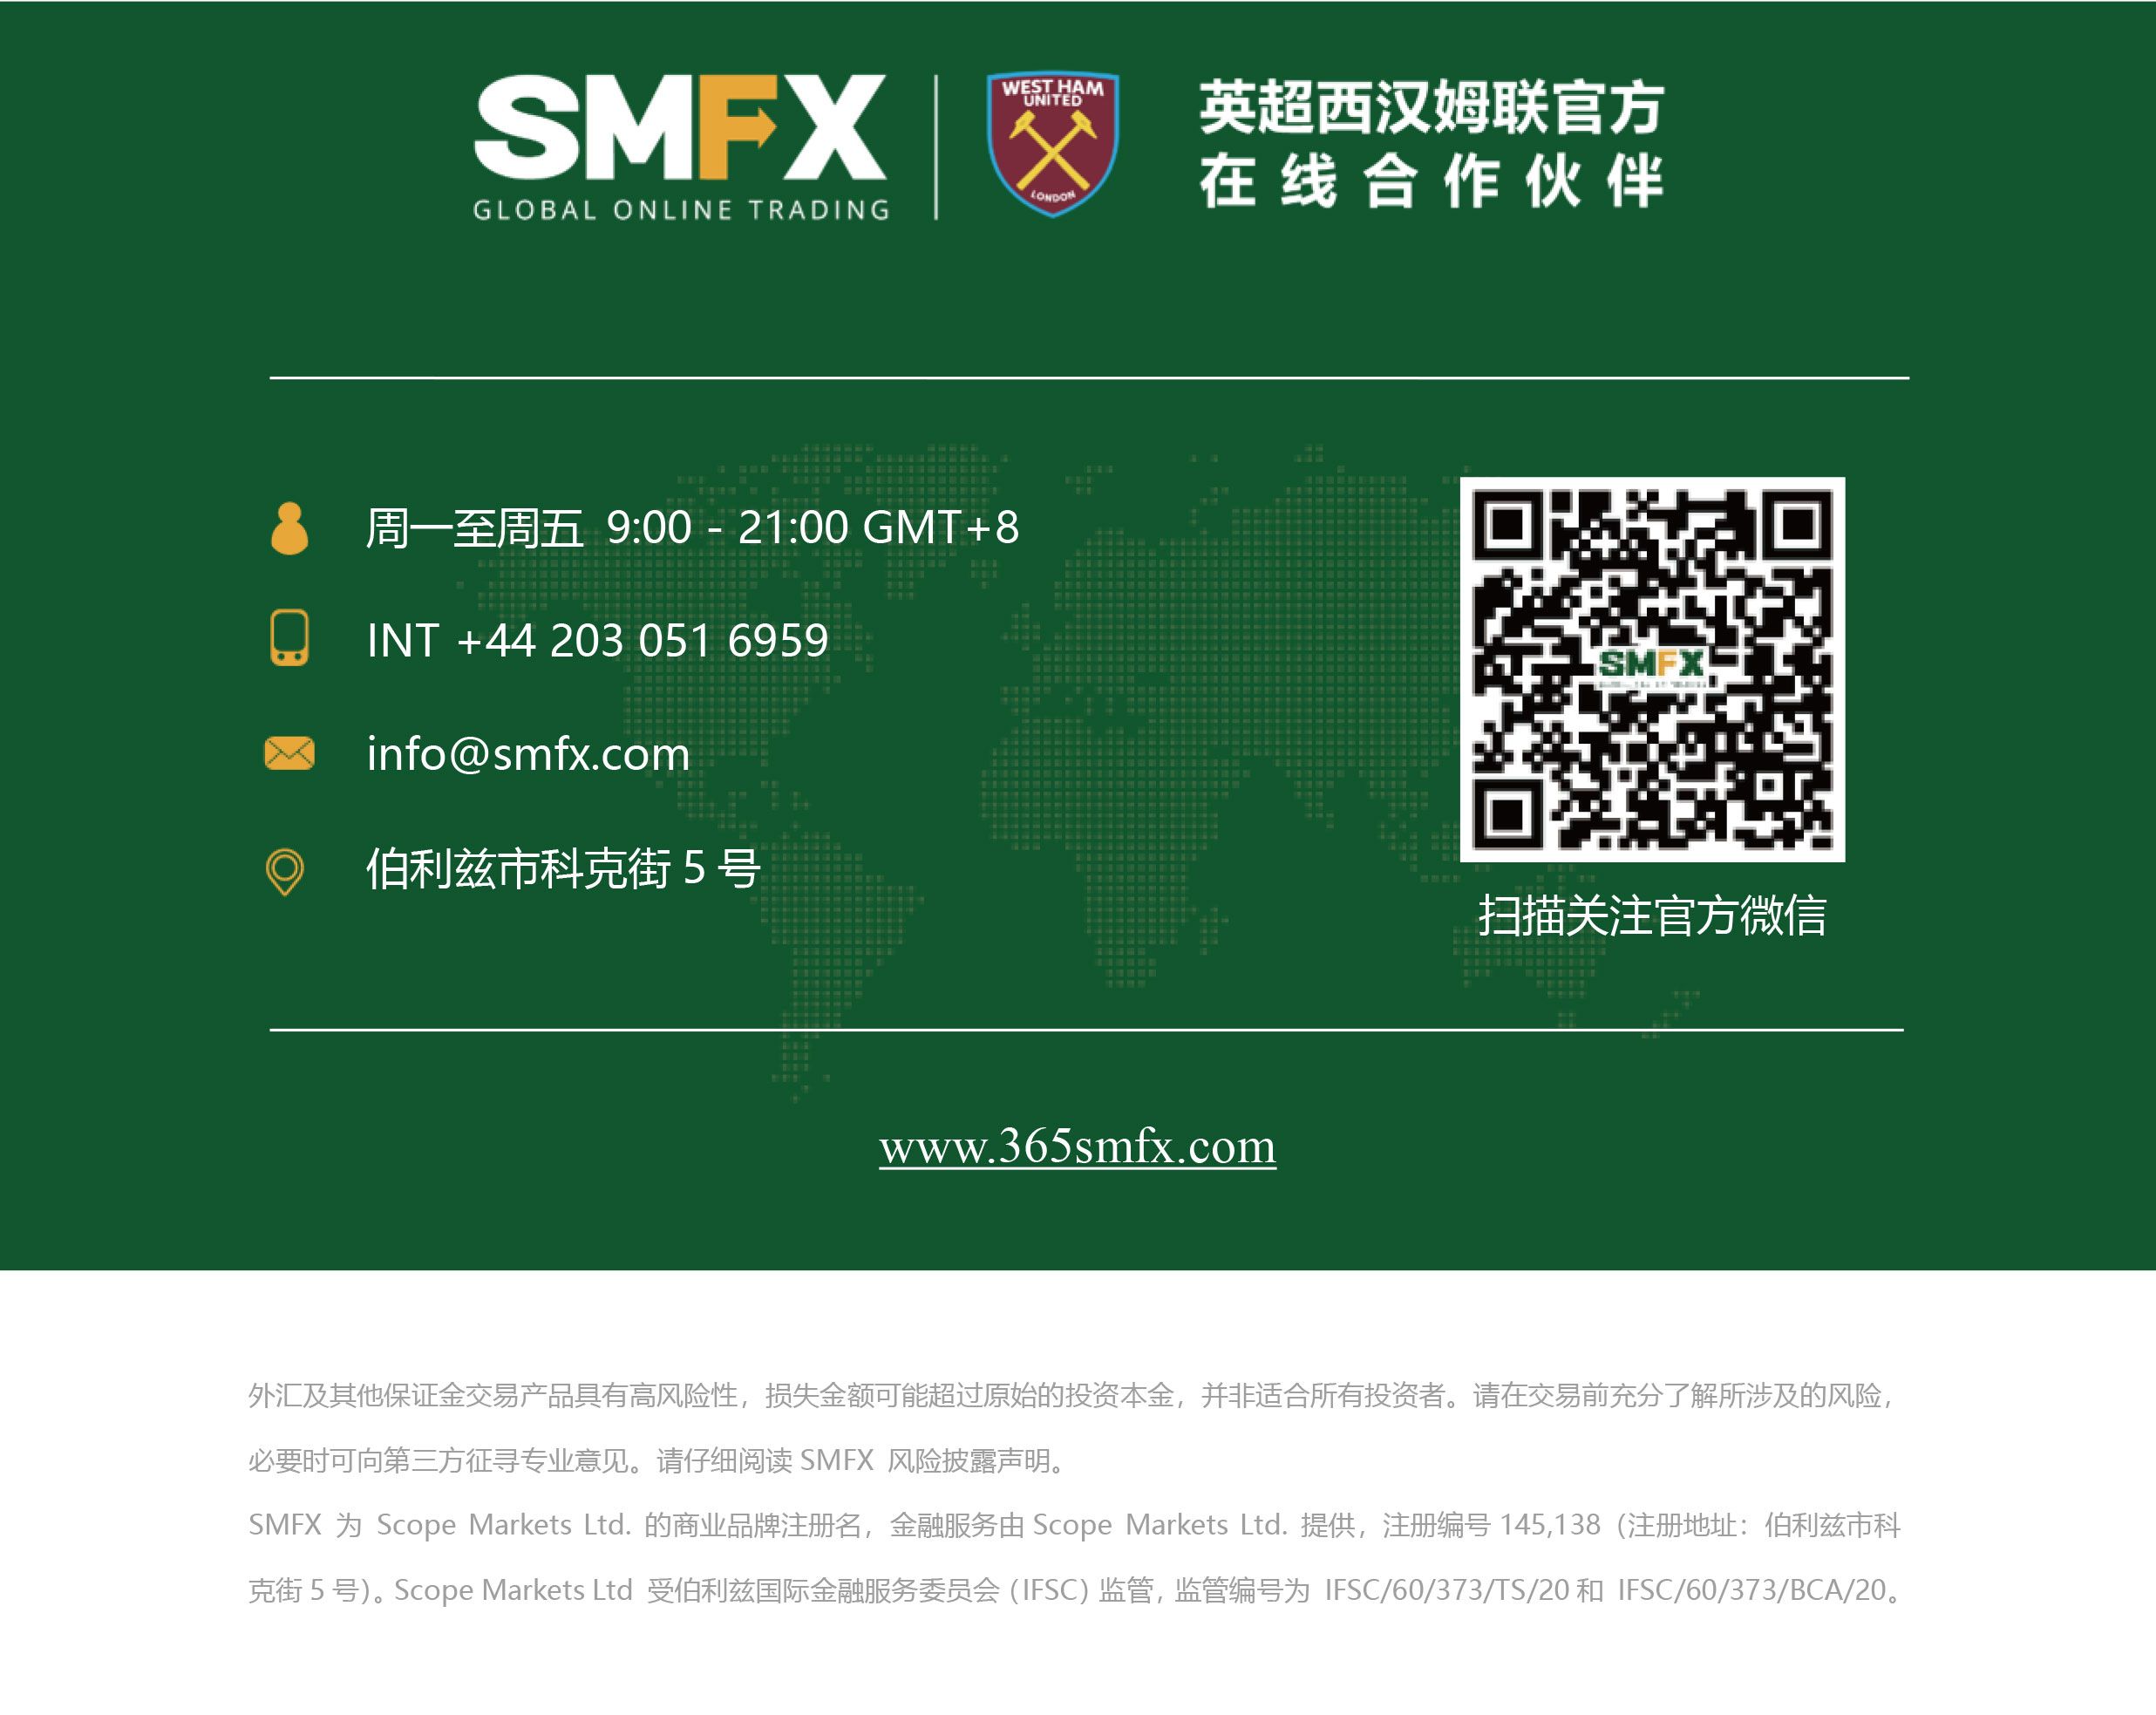 SMFX【市场周评】2020.09.28丨重磅事件接踵而至 下跌行情或将延续